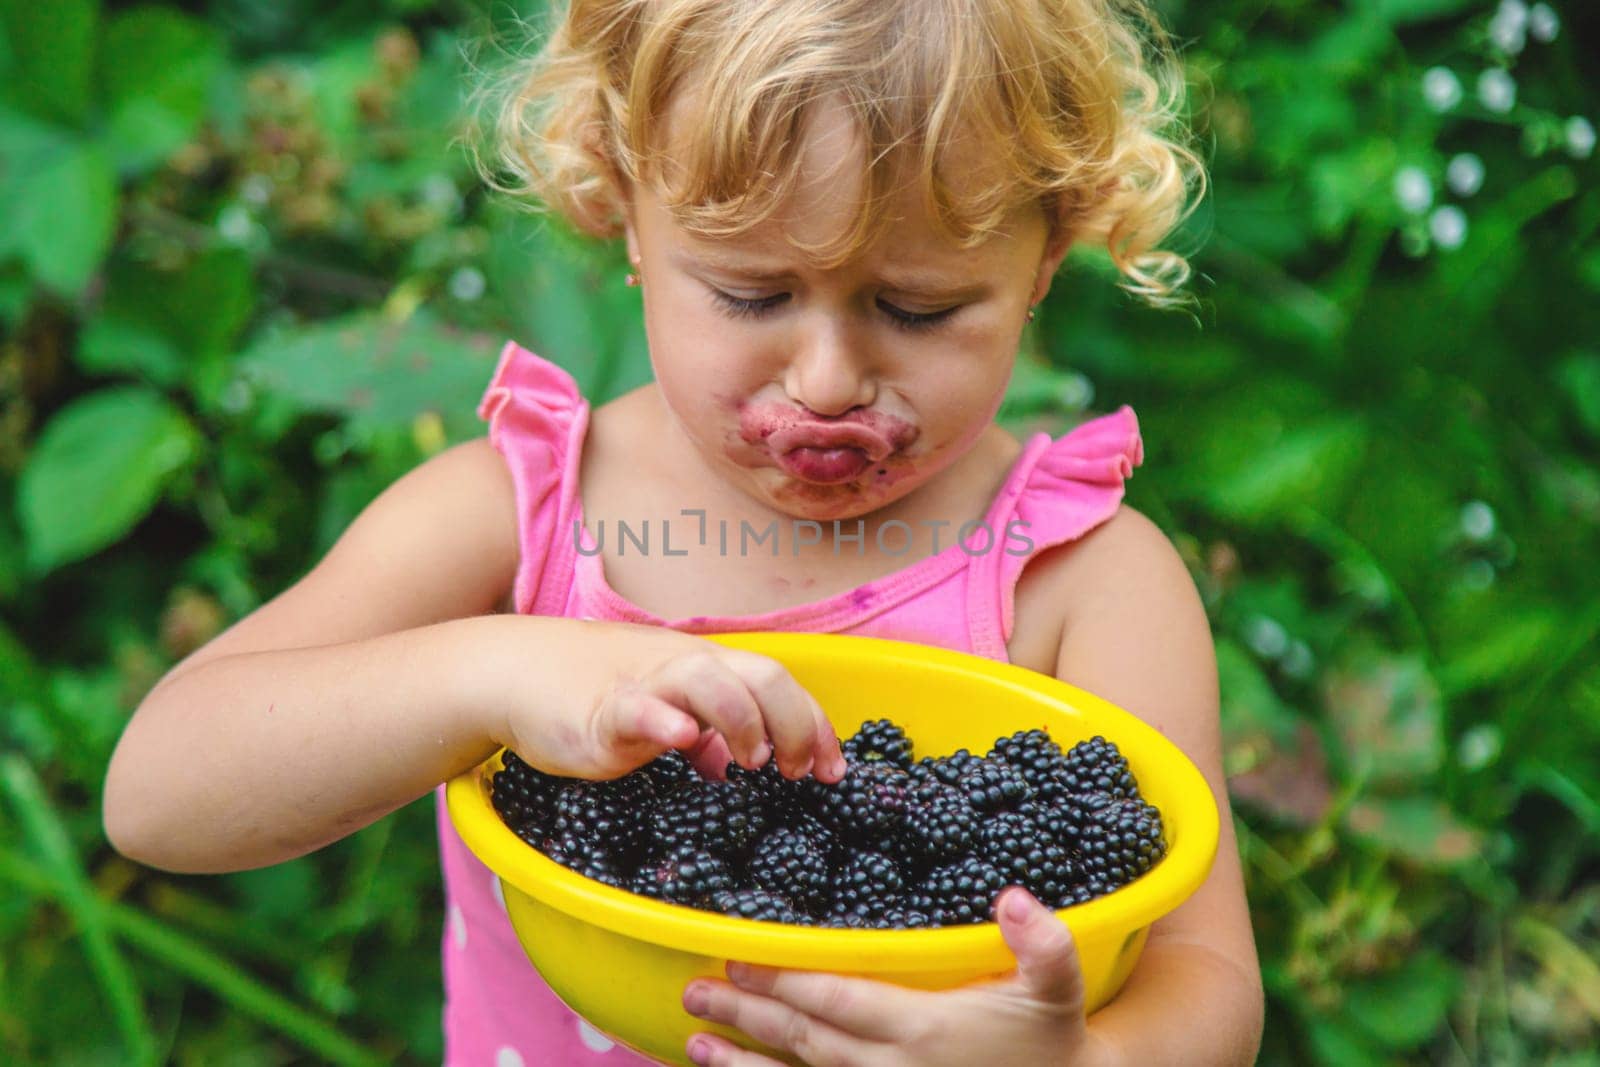 A child in the garden eats blackberries. Selective focus. Kid.